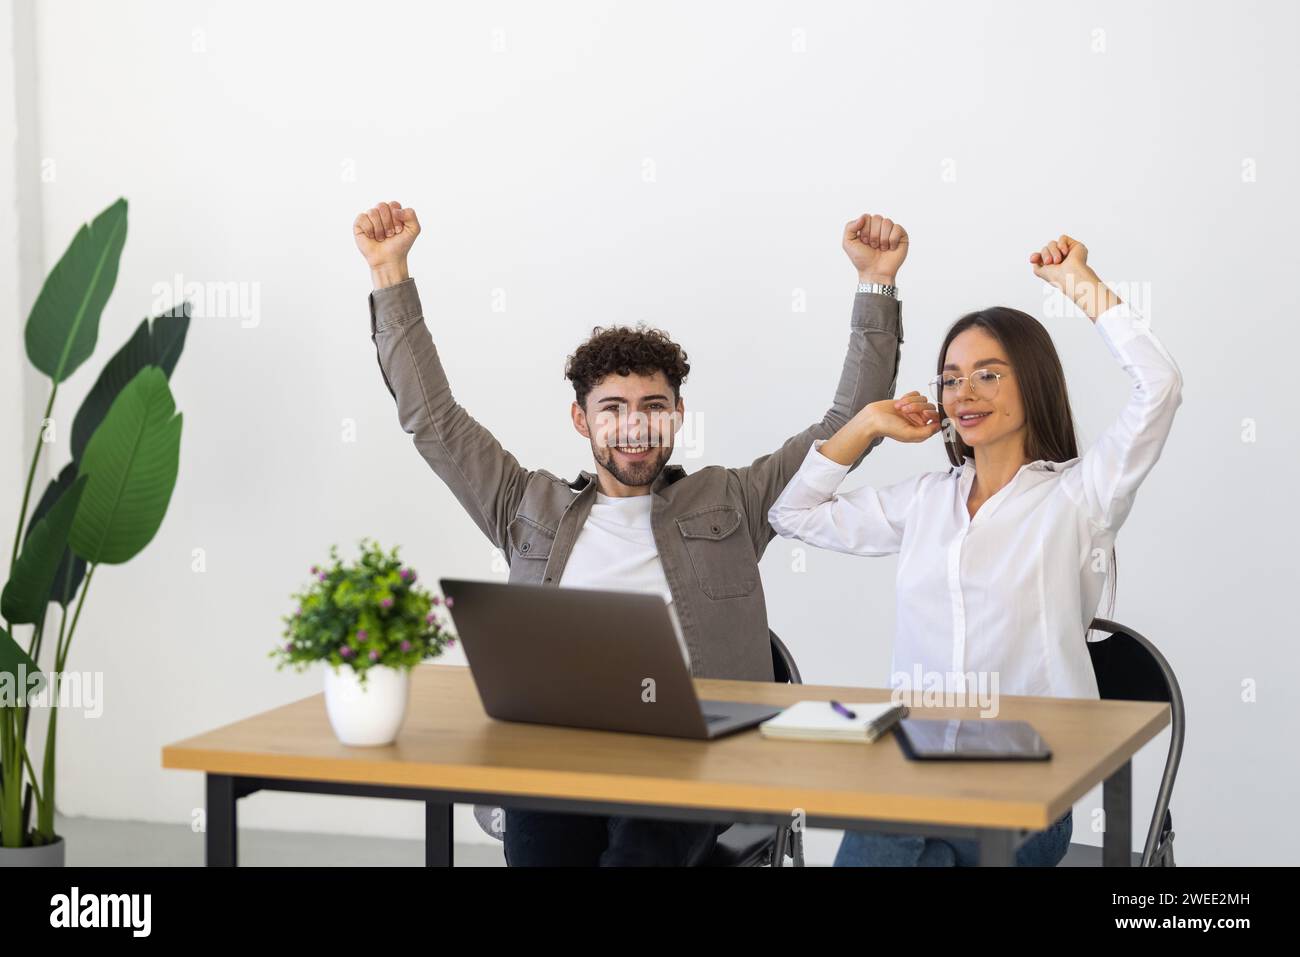 Les professionnels et les hommes d'affaires célèbrent leur succès avec des expressions du visage enthousiastes regardant l'écran de l'ordinateur portable. Banque D'Images